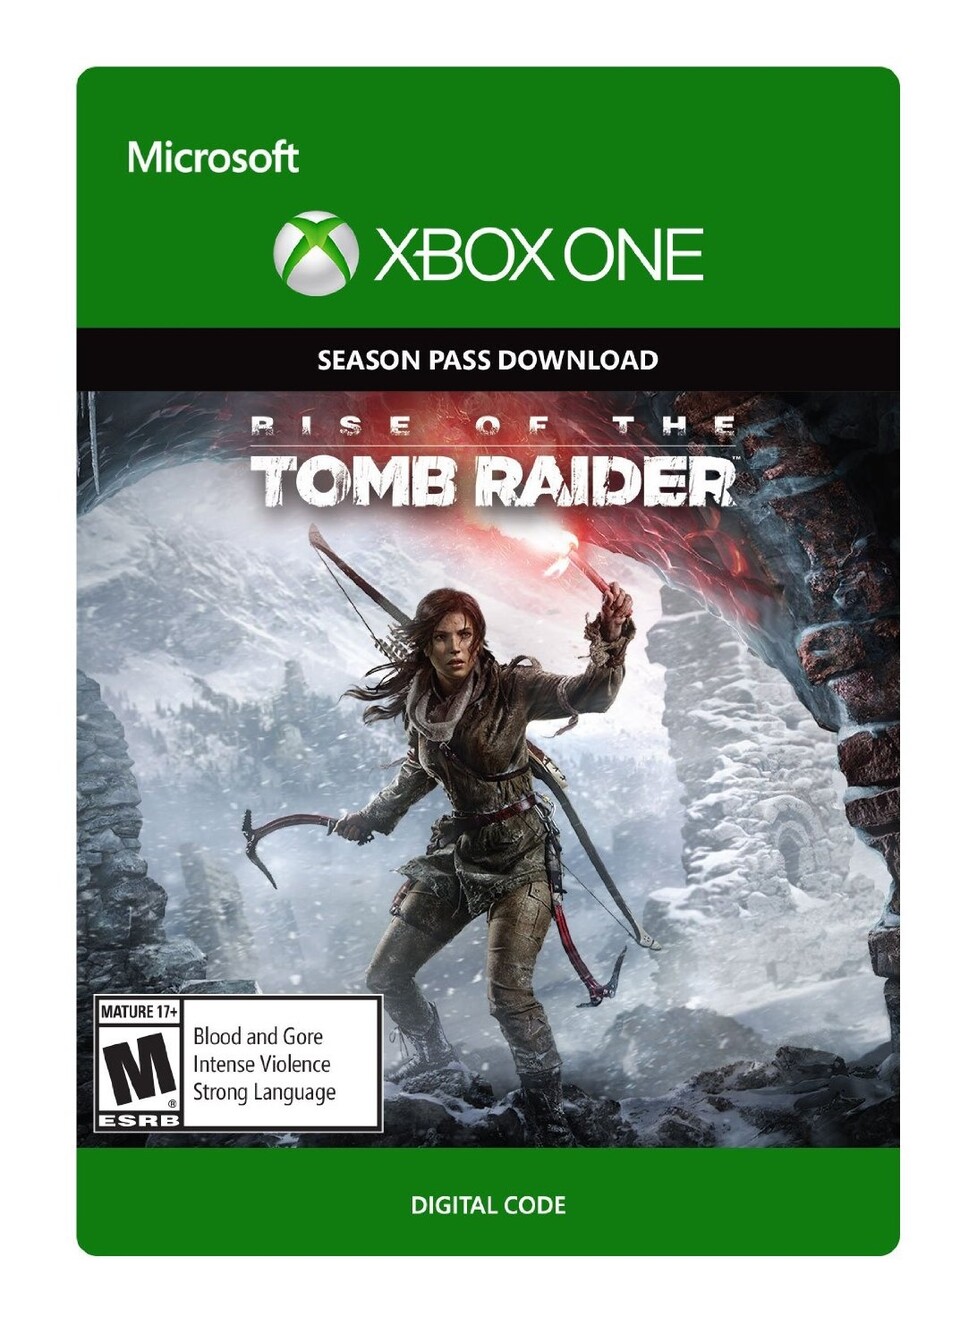 Packshot des Rise of the Tomb Raider Season Pass für die Xbox One auf Amazon